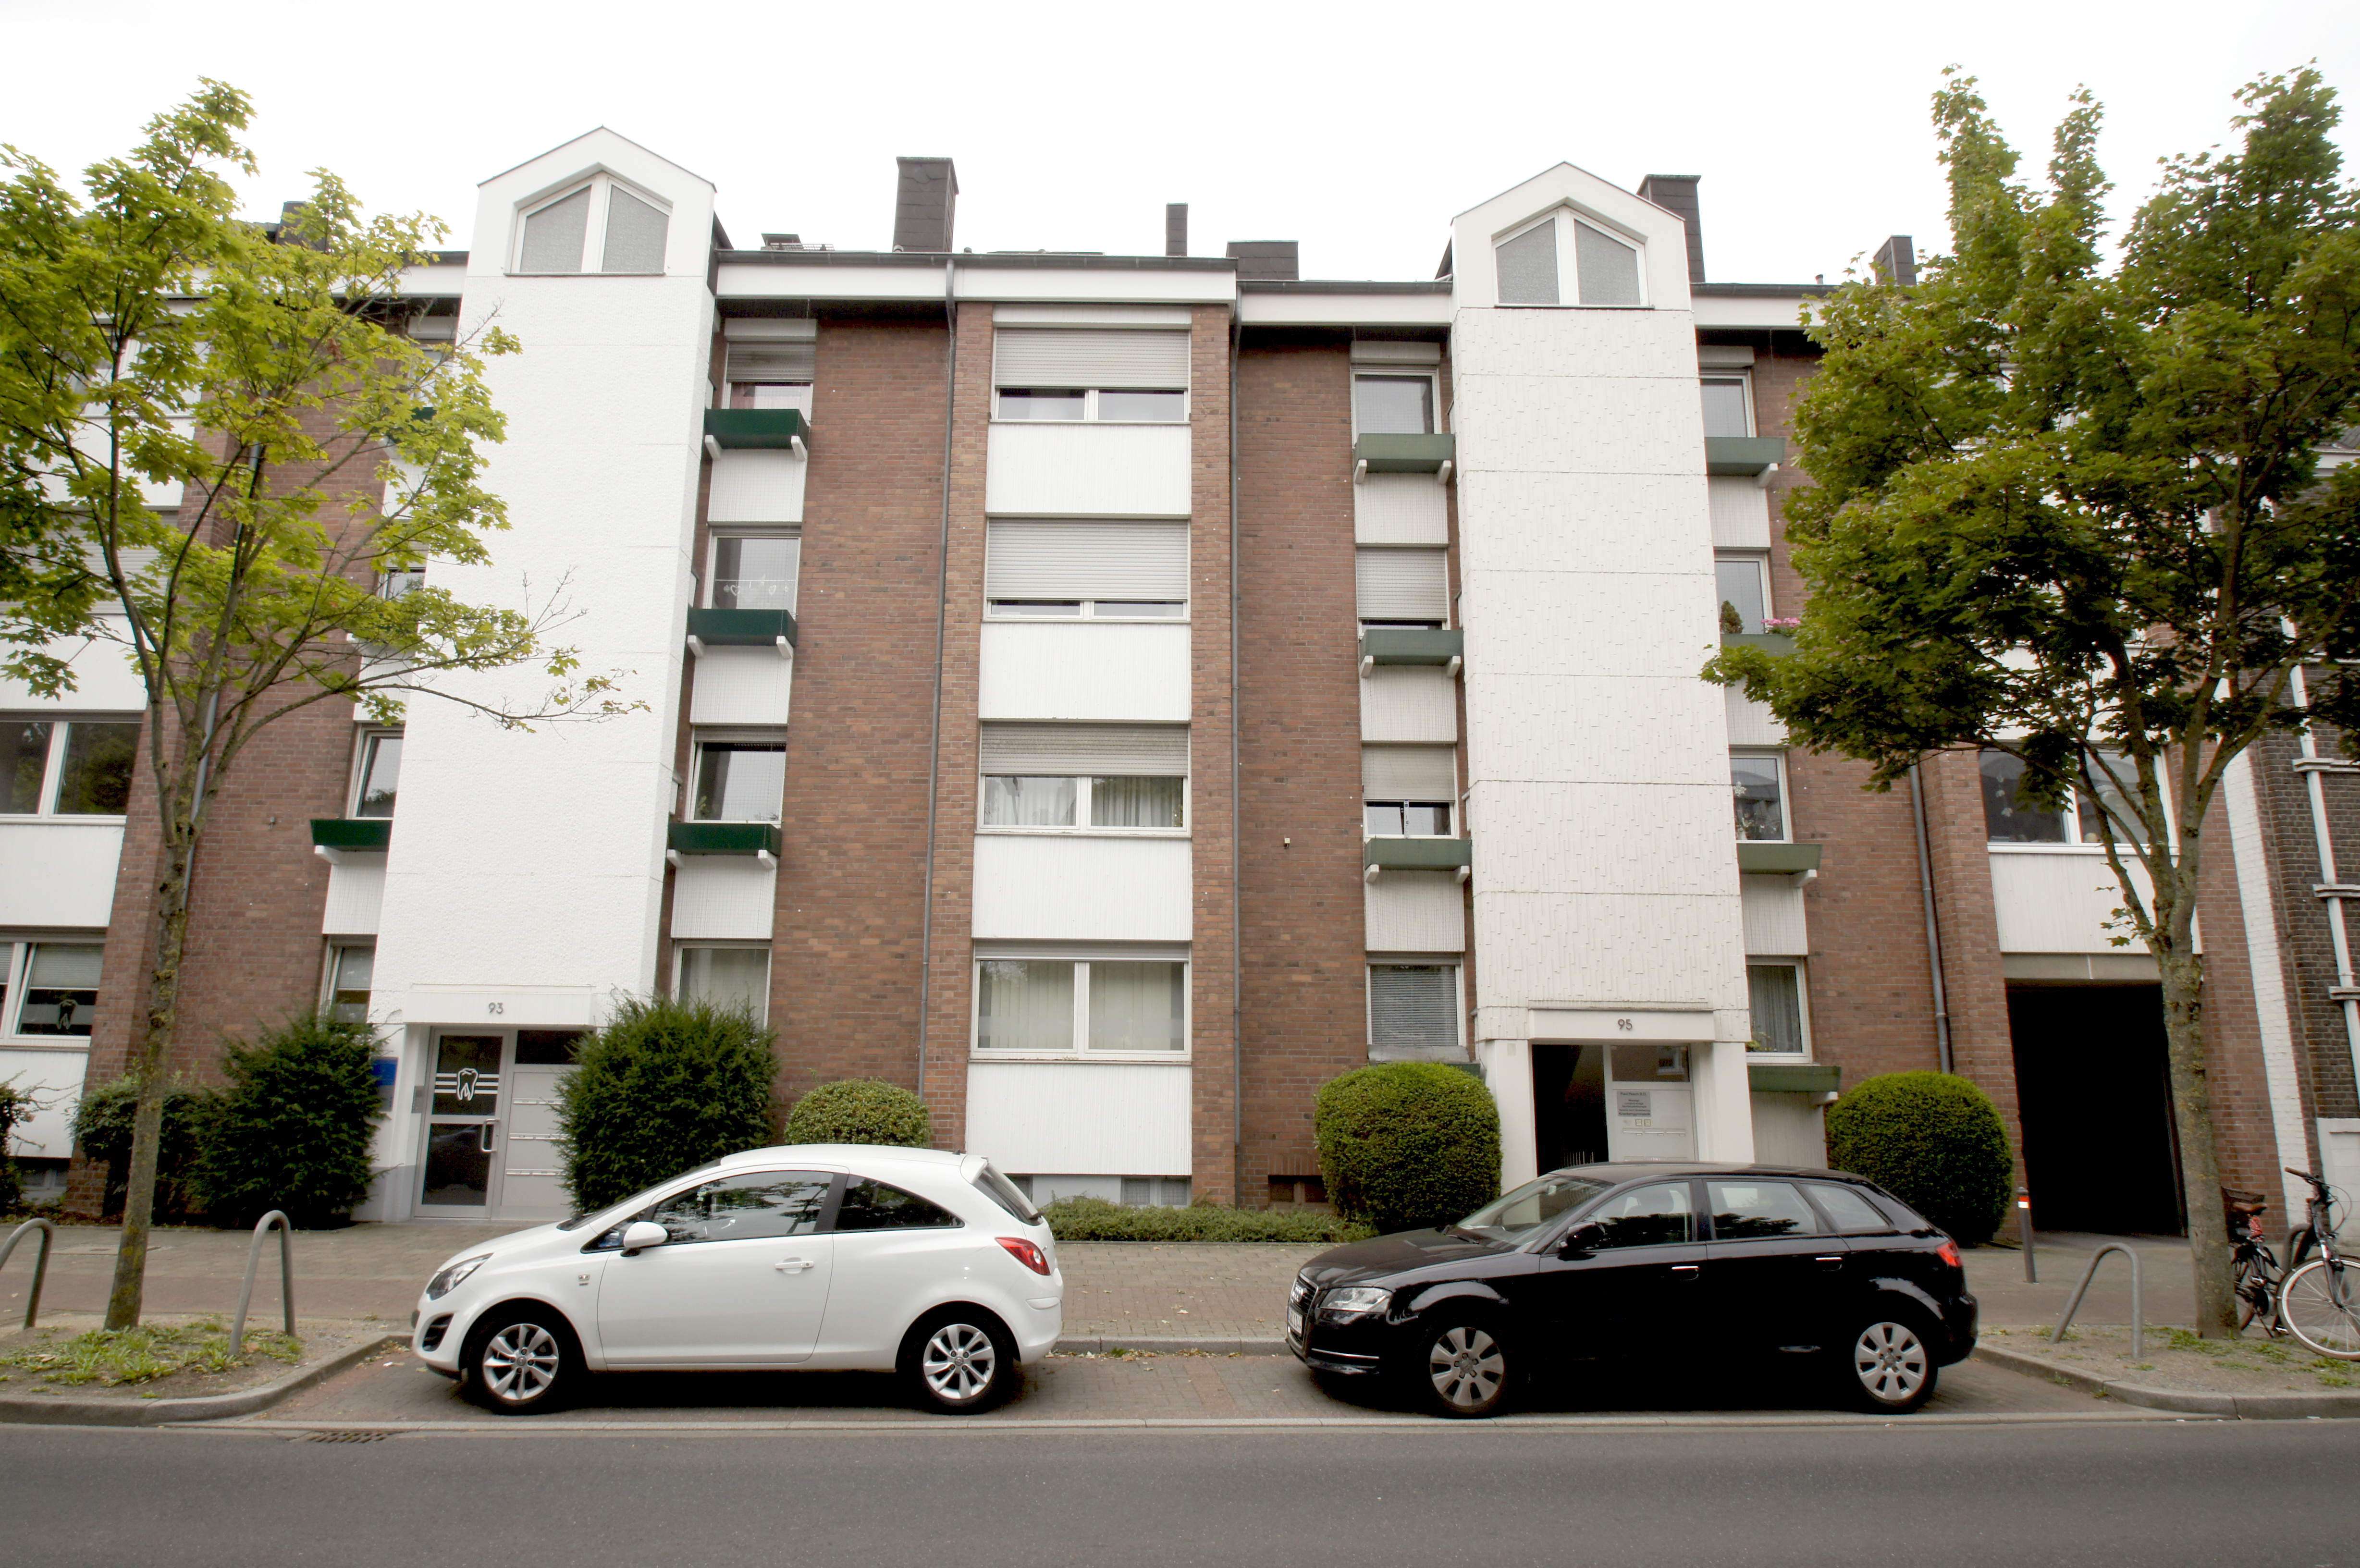 Vermietet! Neuss-Furth: Helles und gepflegtes Apartment mit Eichendielen, Duschbad und Balkon